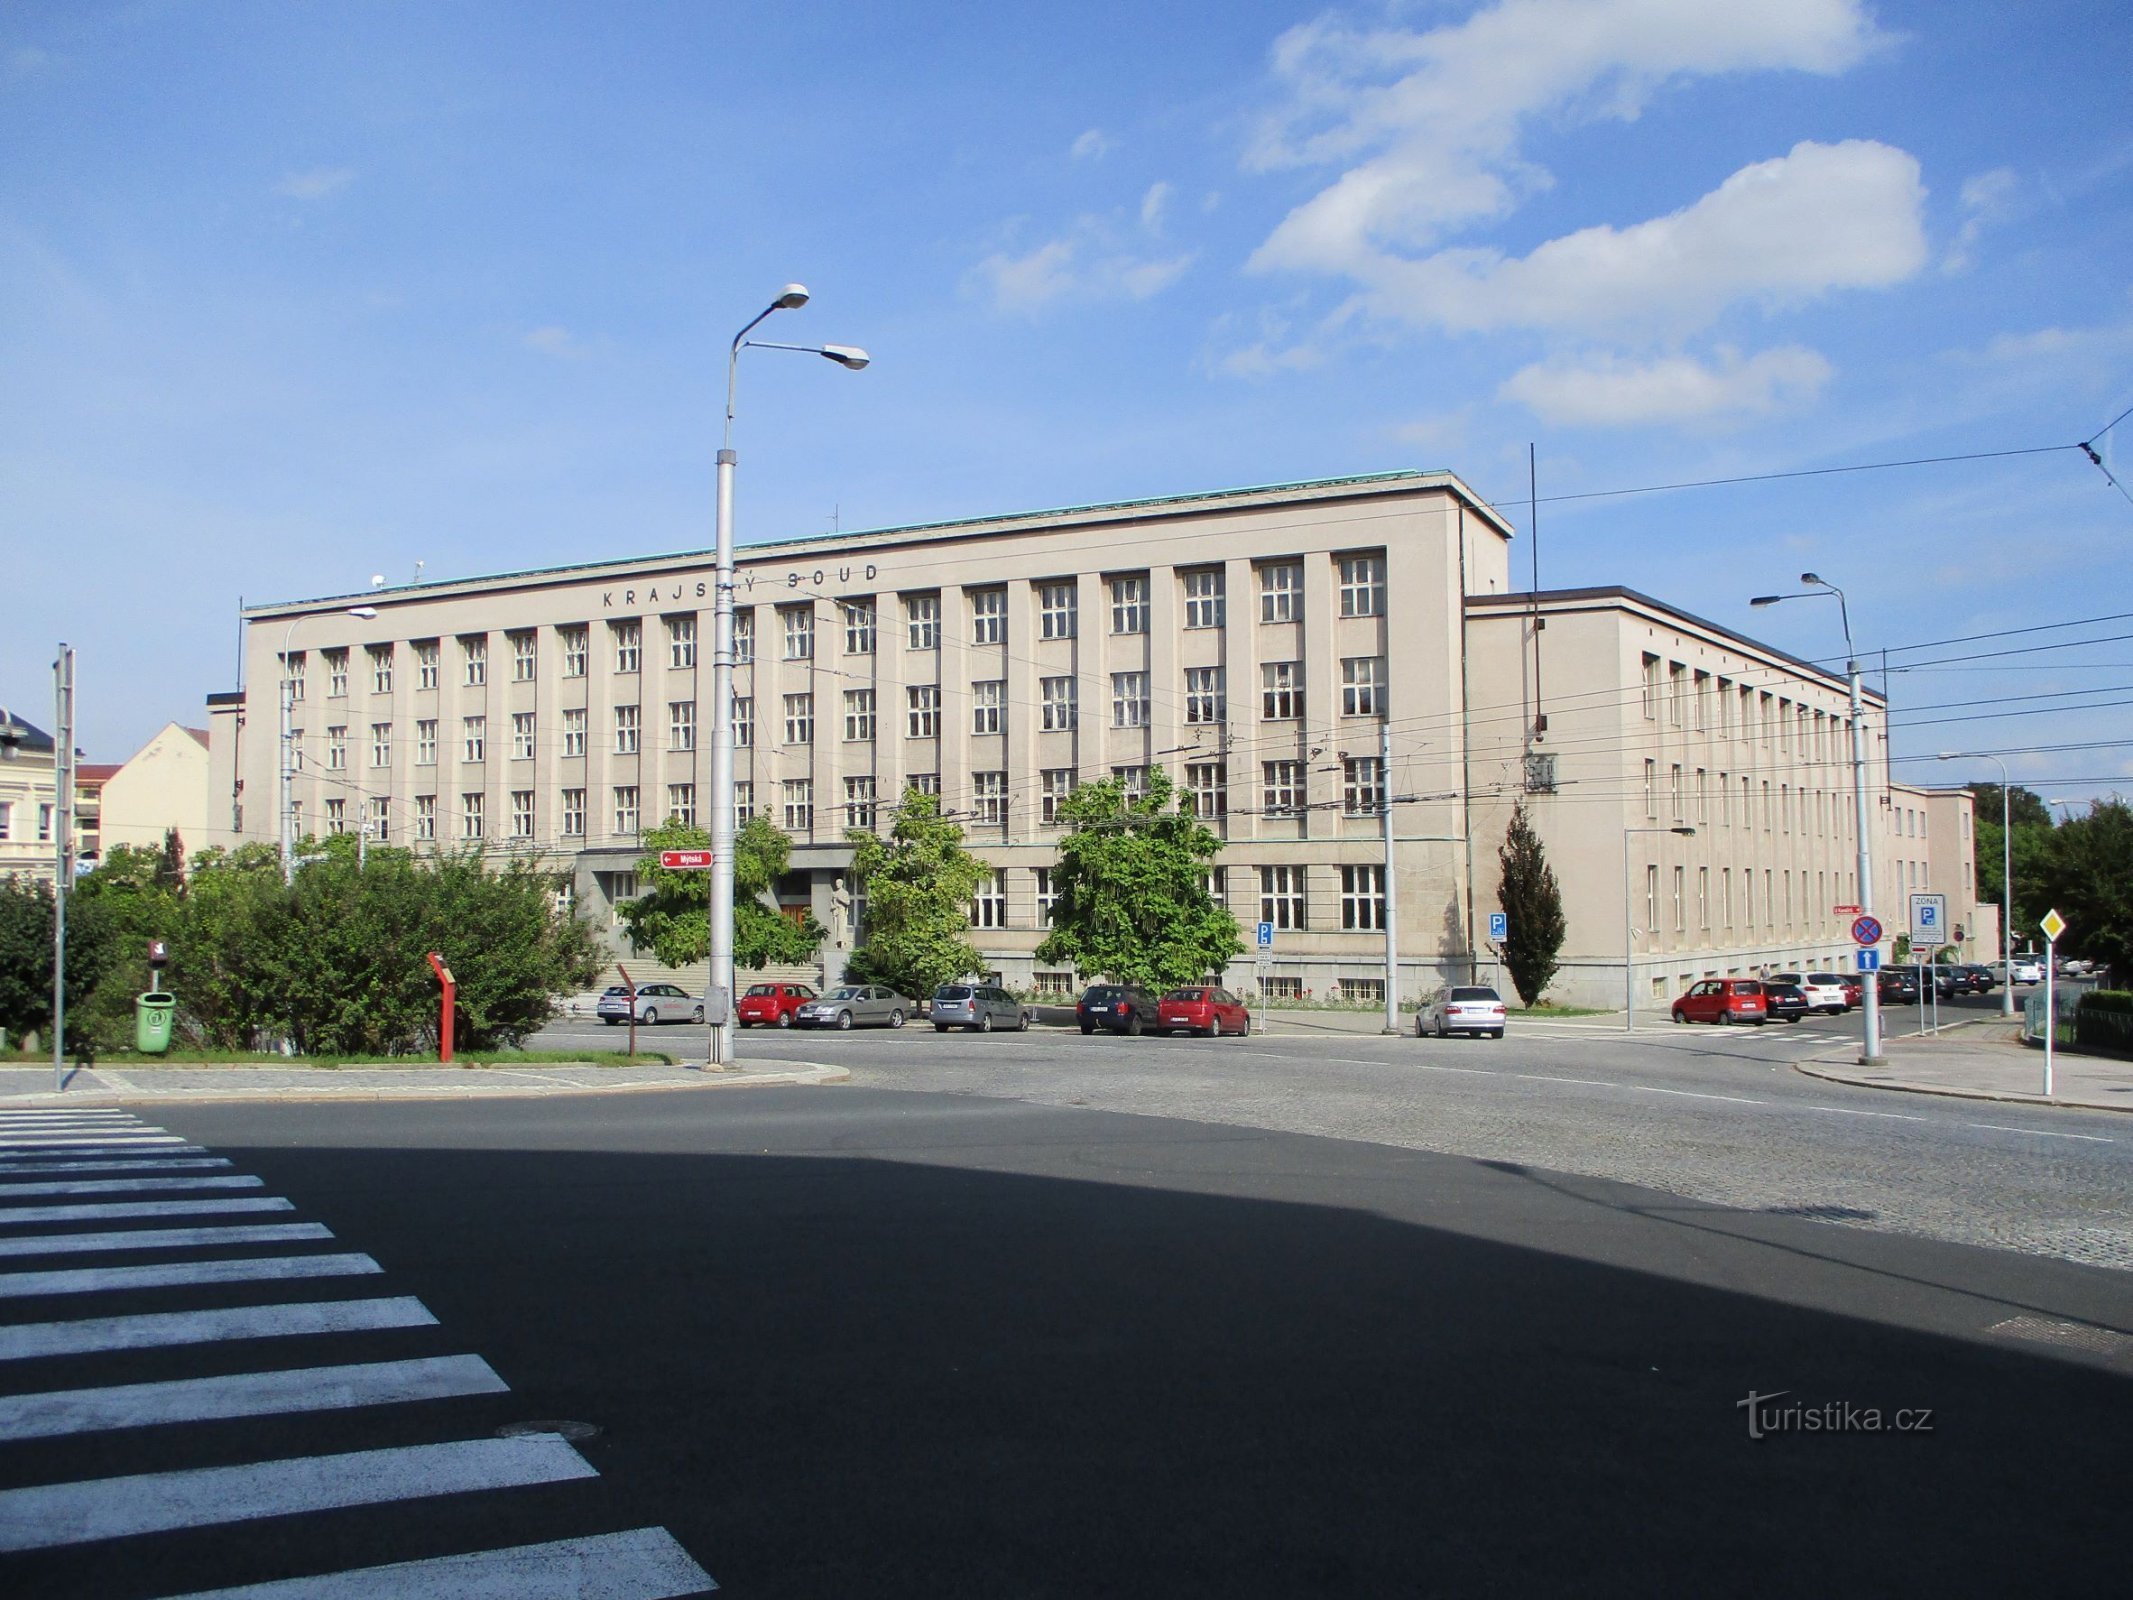 Tòa án khu vực (Hradec Králové, 15.9.2019/XNUMX/XNUMX)